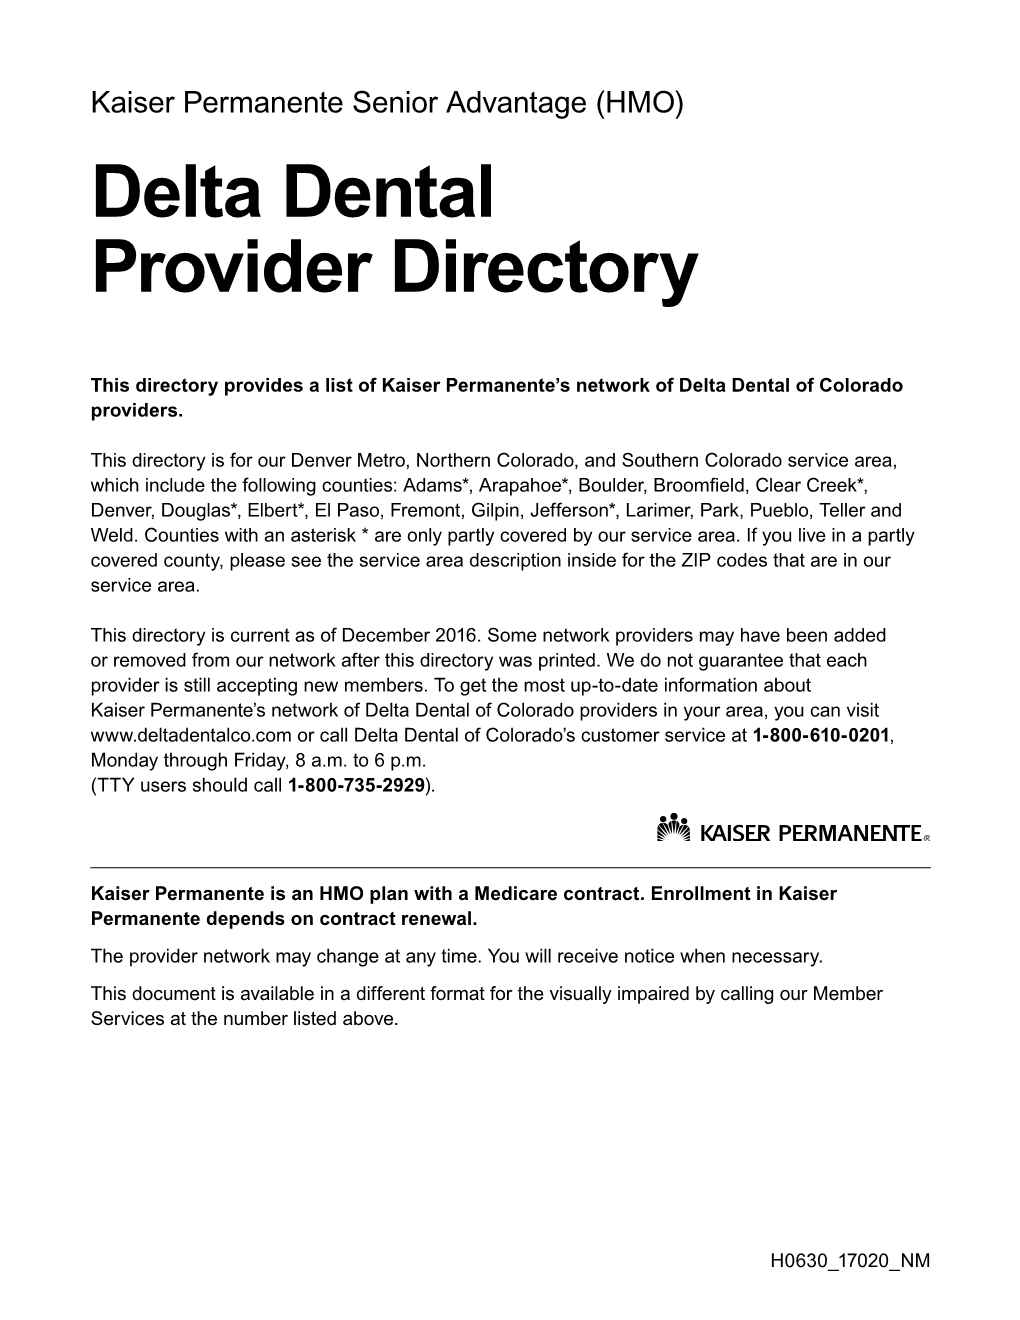 Delta Dental Provider Directory